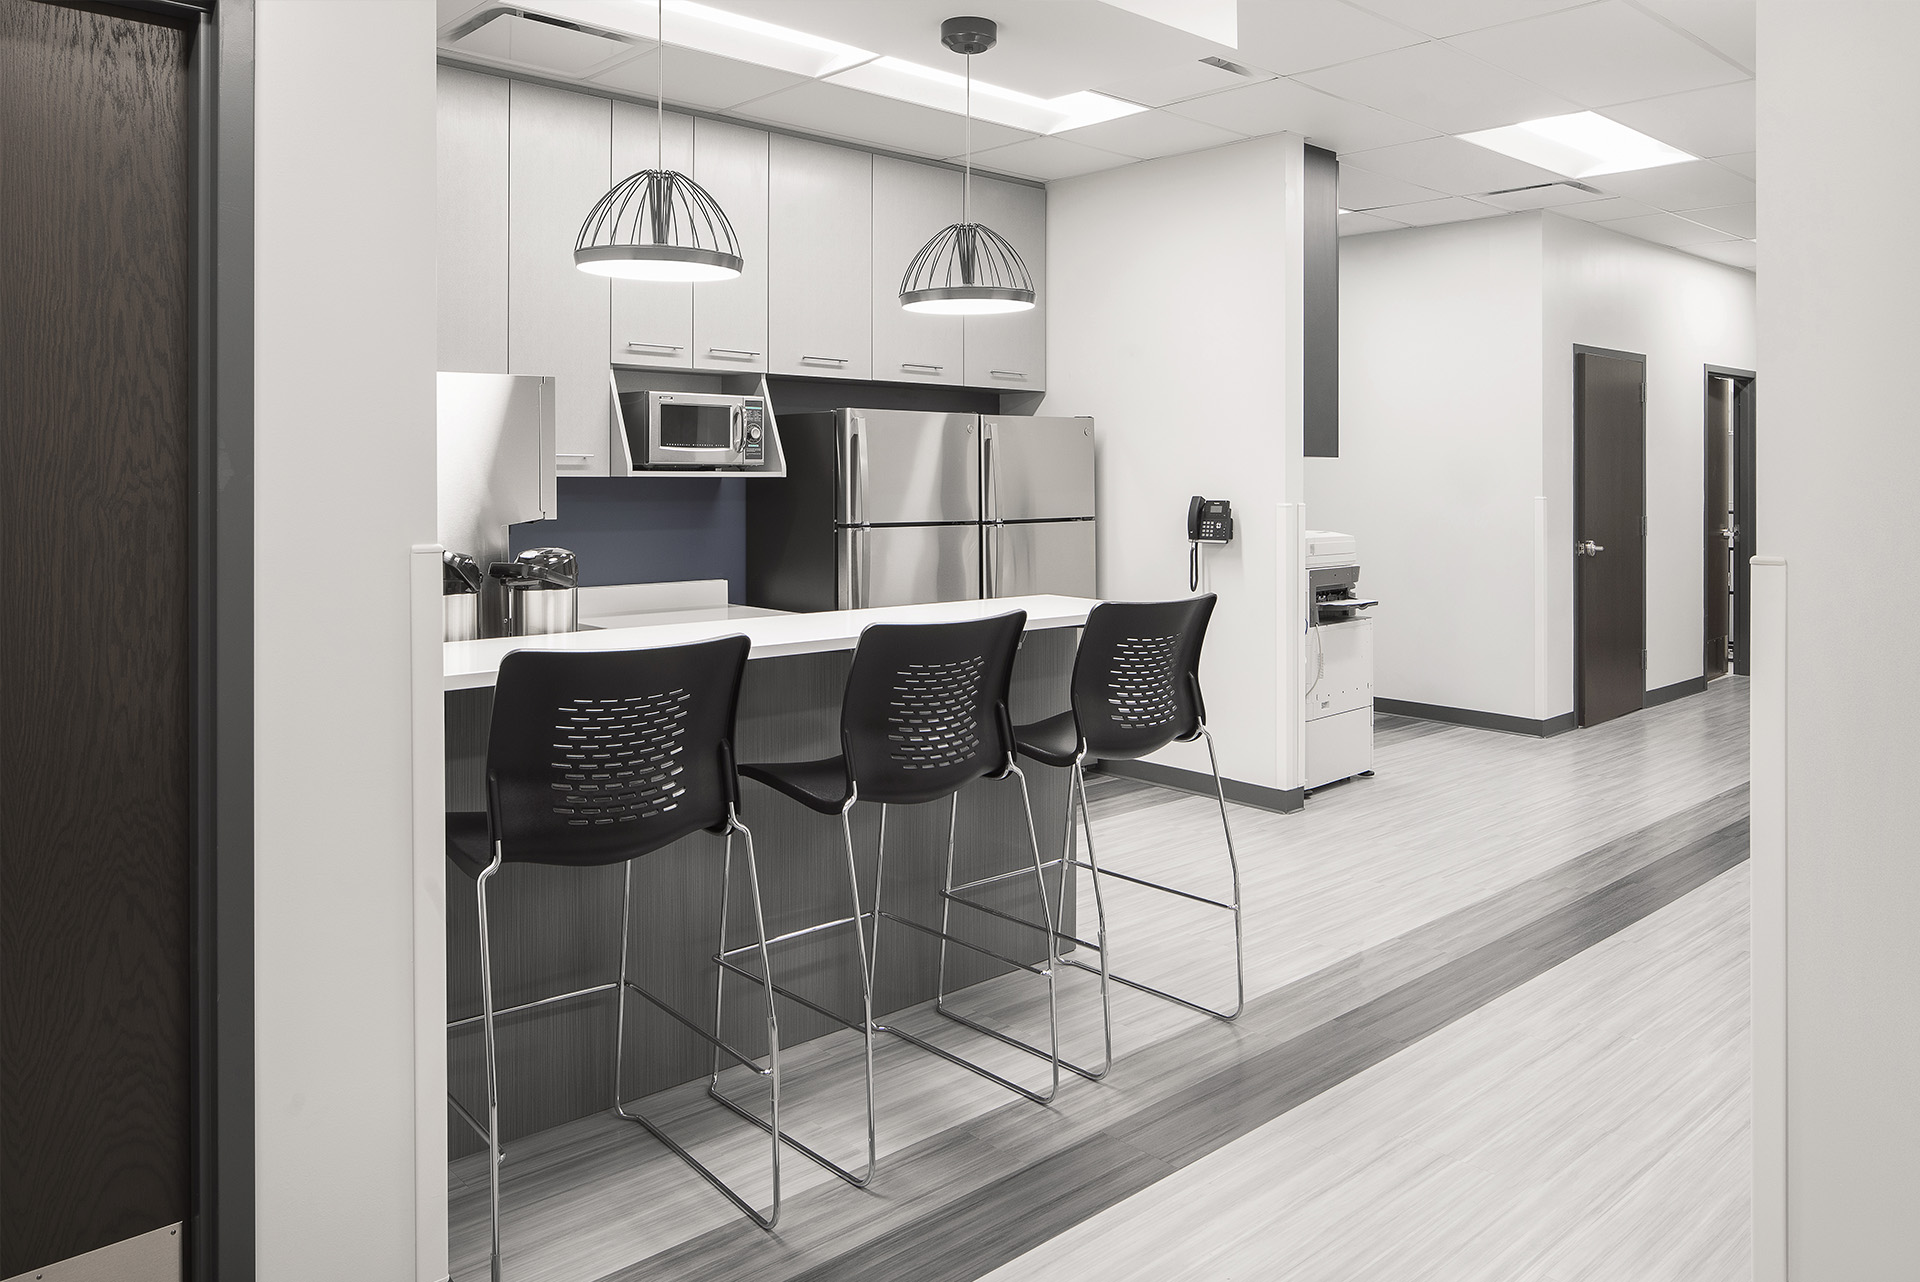 Motion Orthopaedics medical architecture interior design